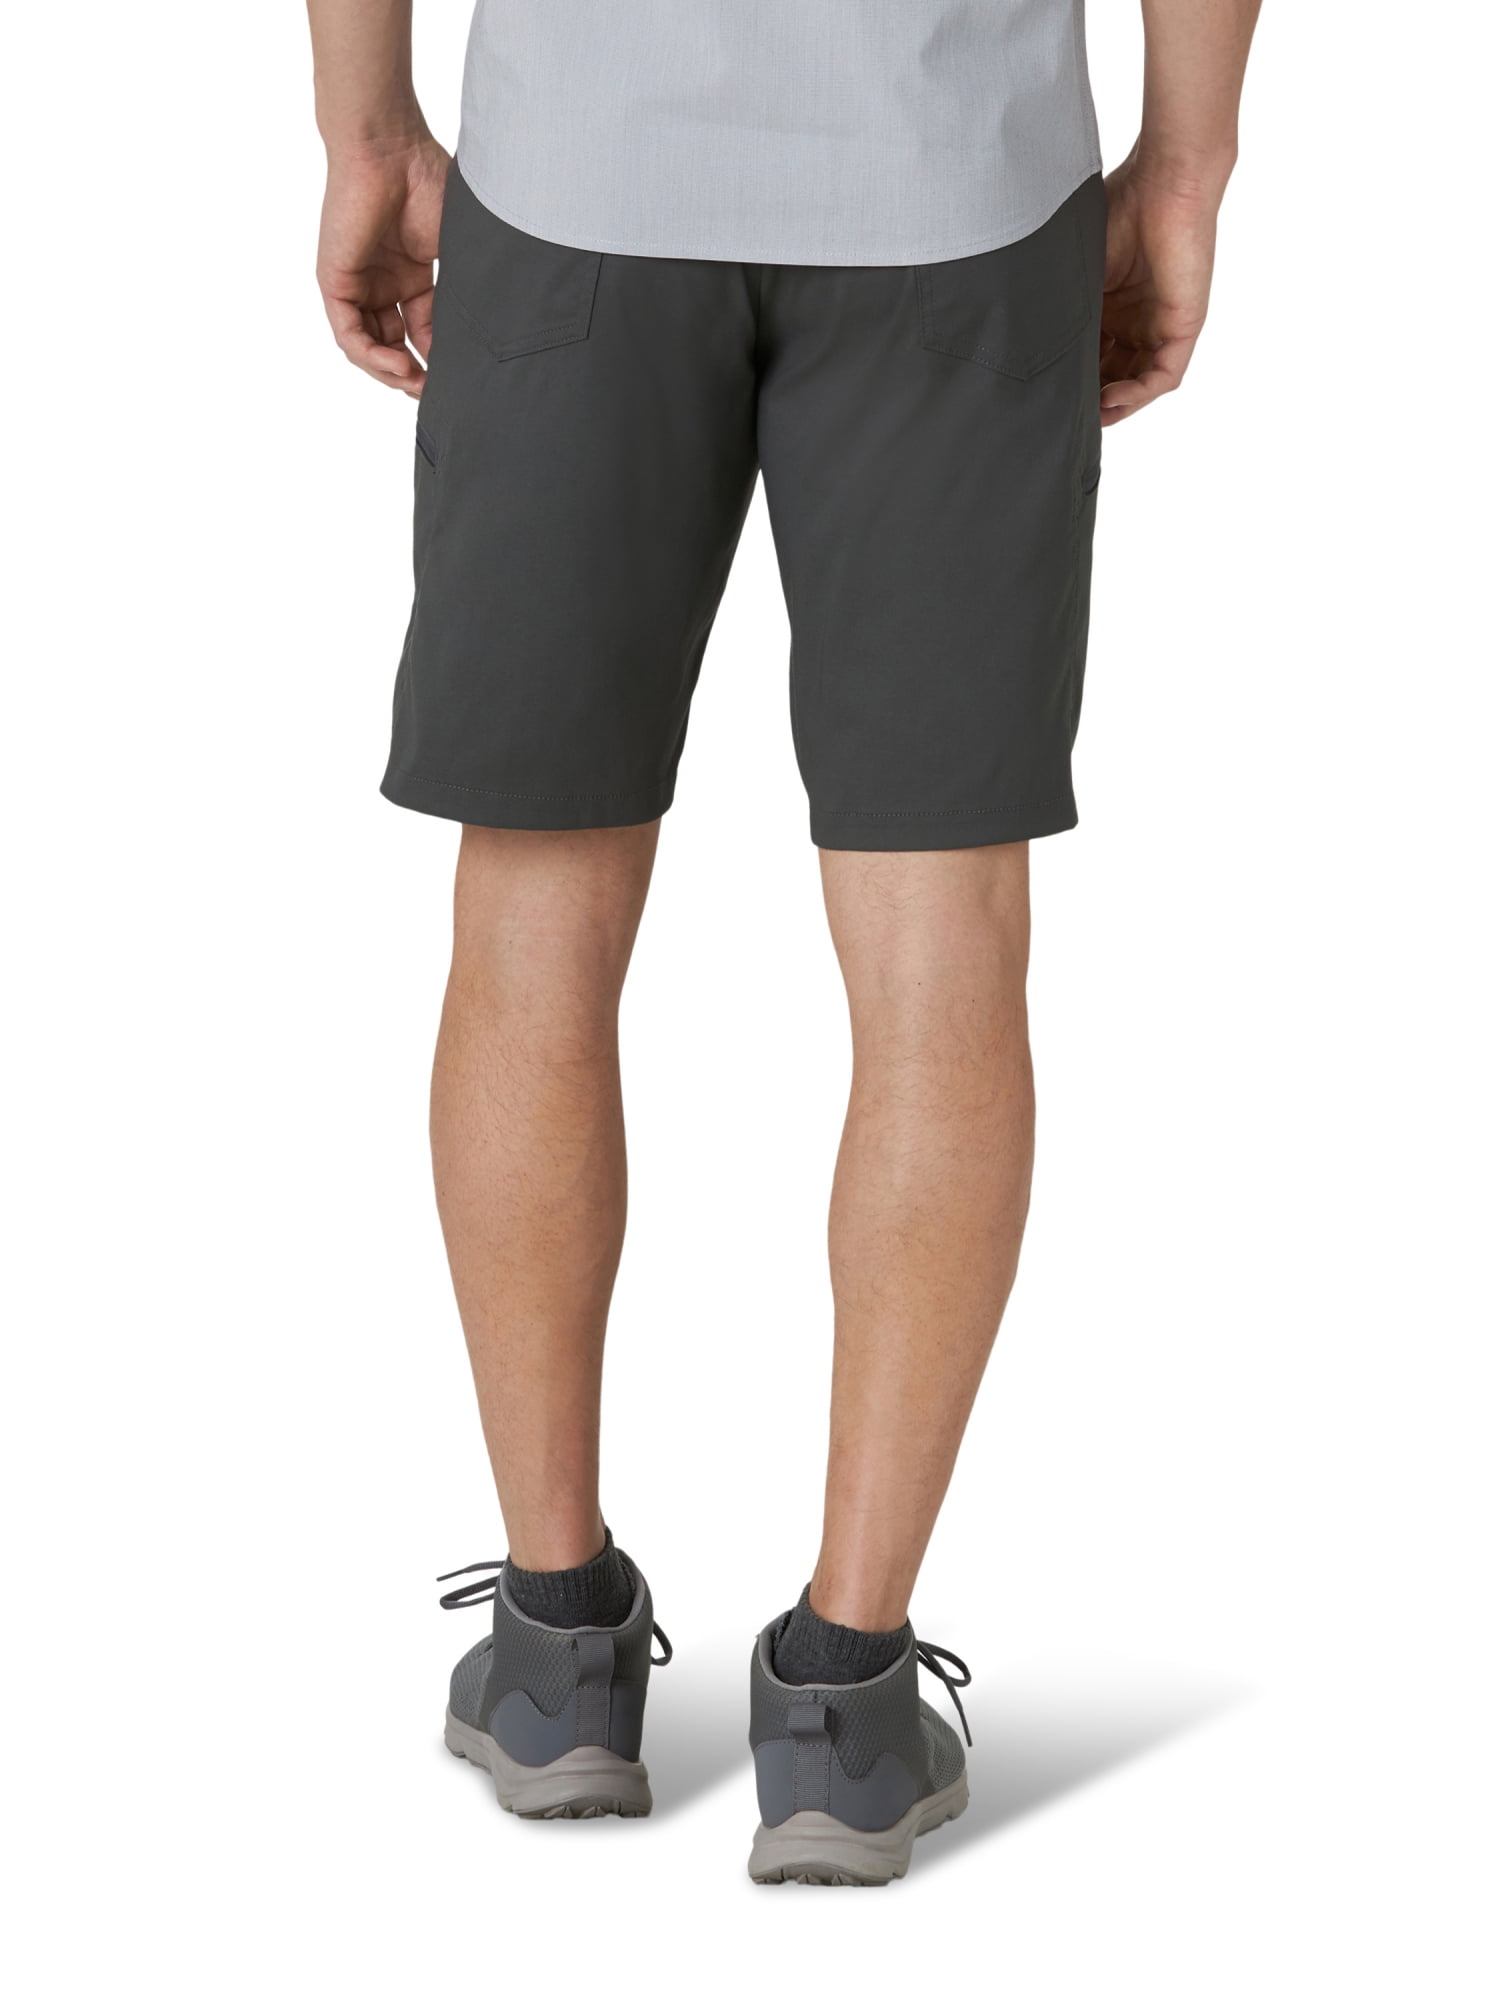 walmart wrangler men's shorts